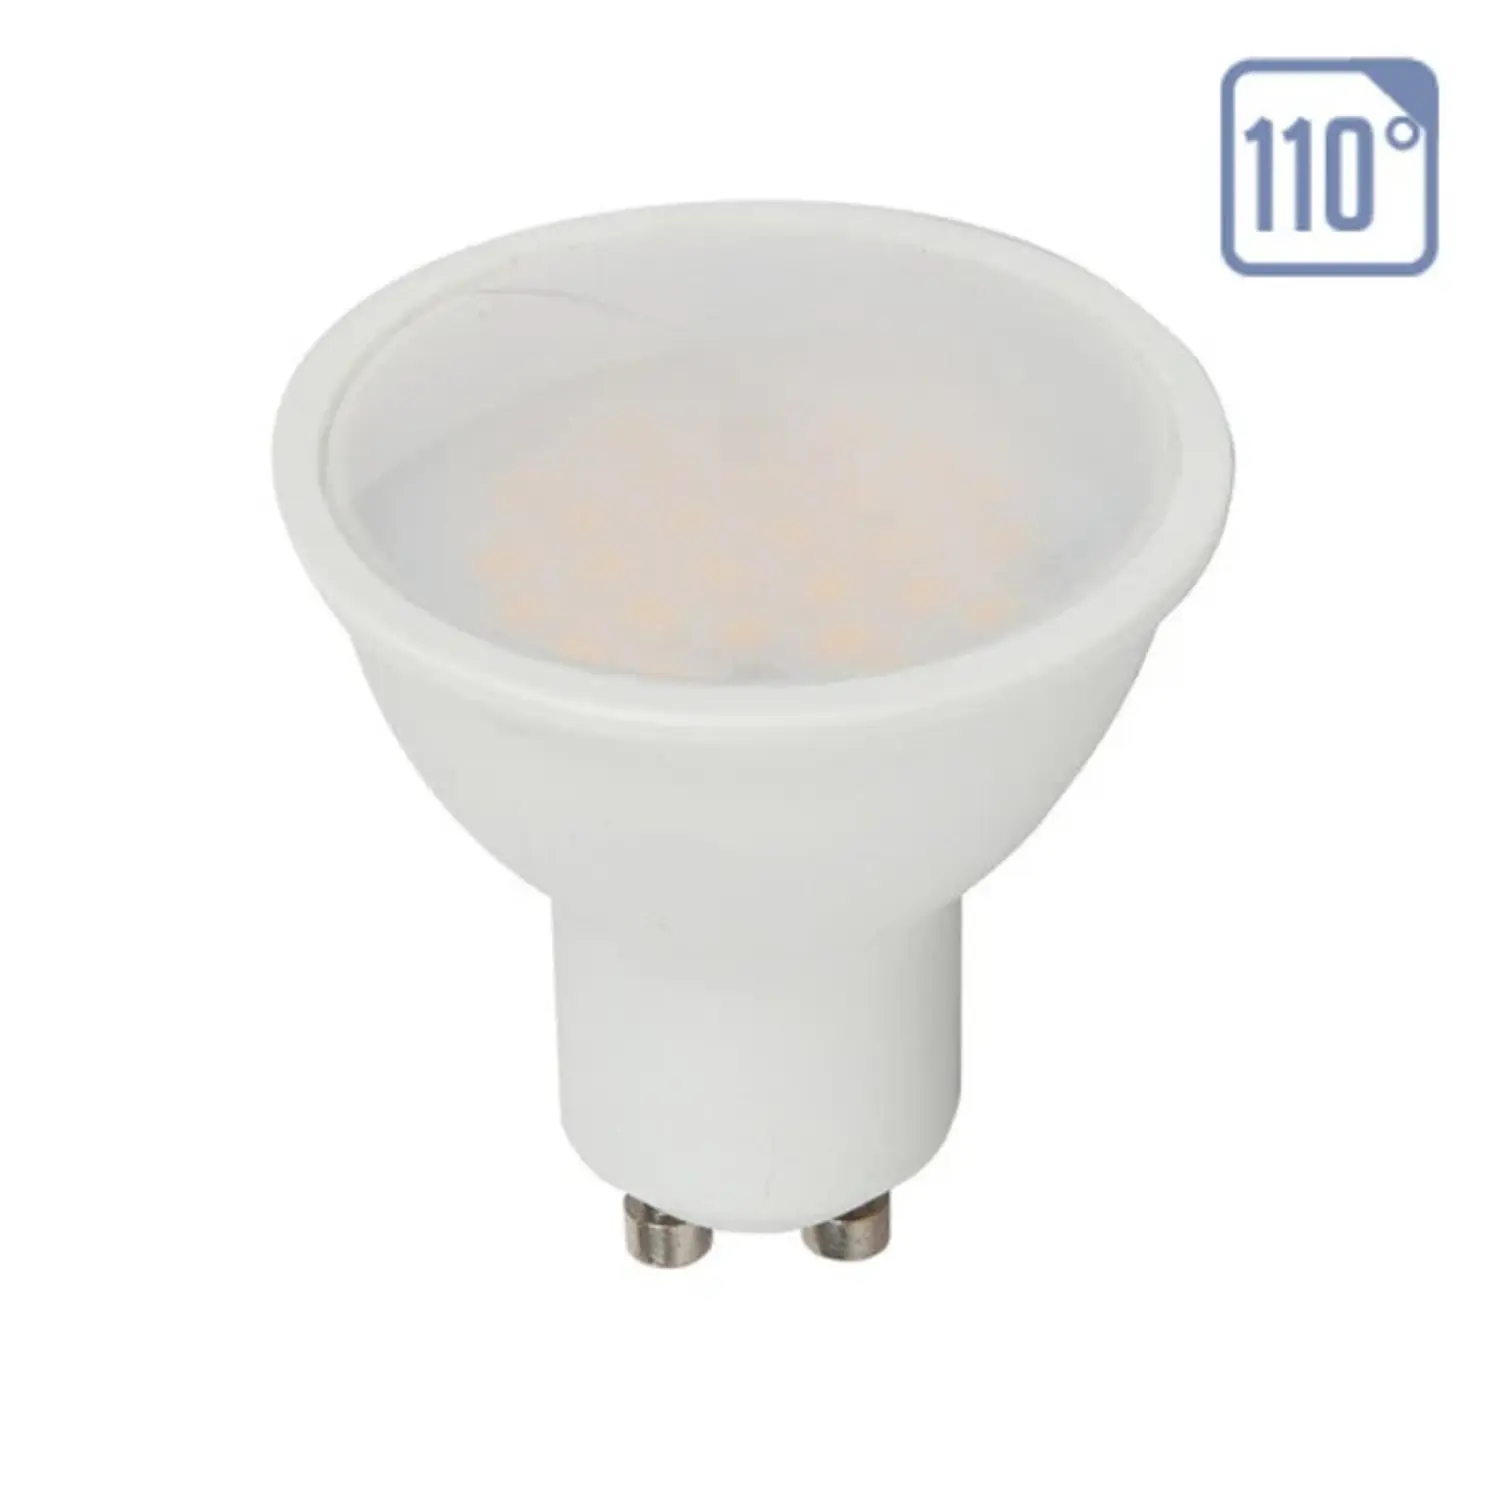 immagine del prodotto lampadina led chip samsung gu10 8 watt bianco freddo